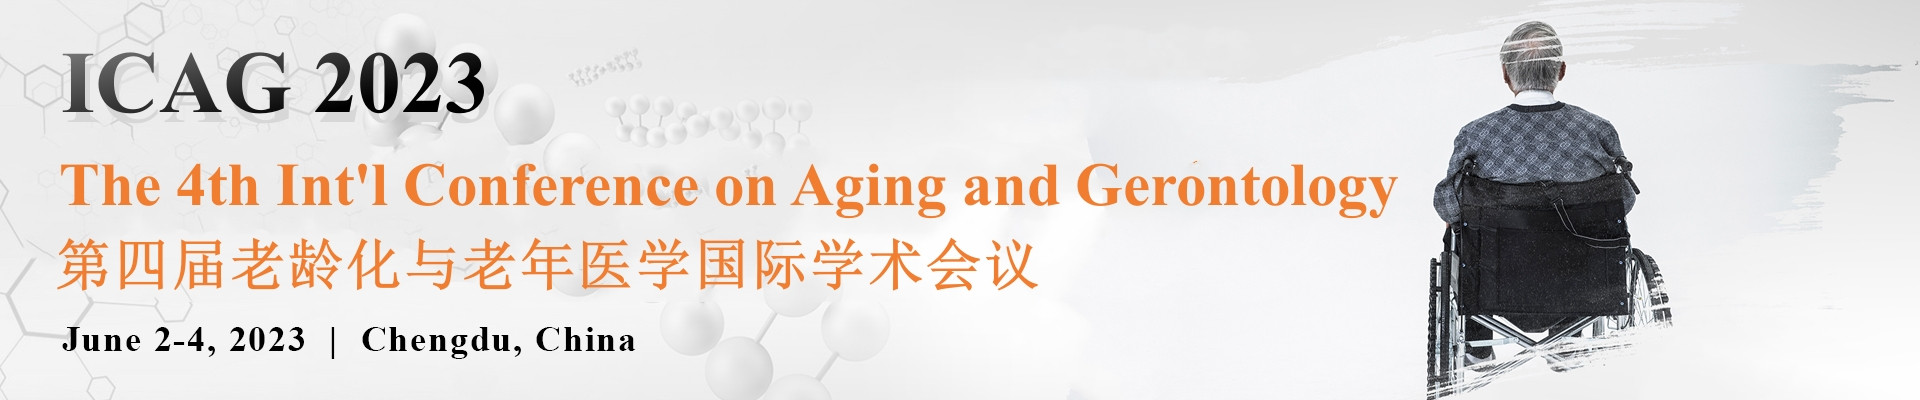 第四届老龄化与老年医学国际学术会议(ICAG 2023)